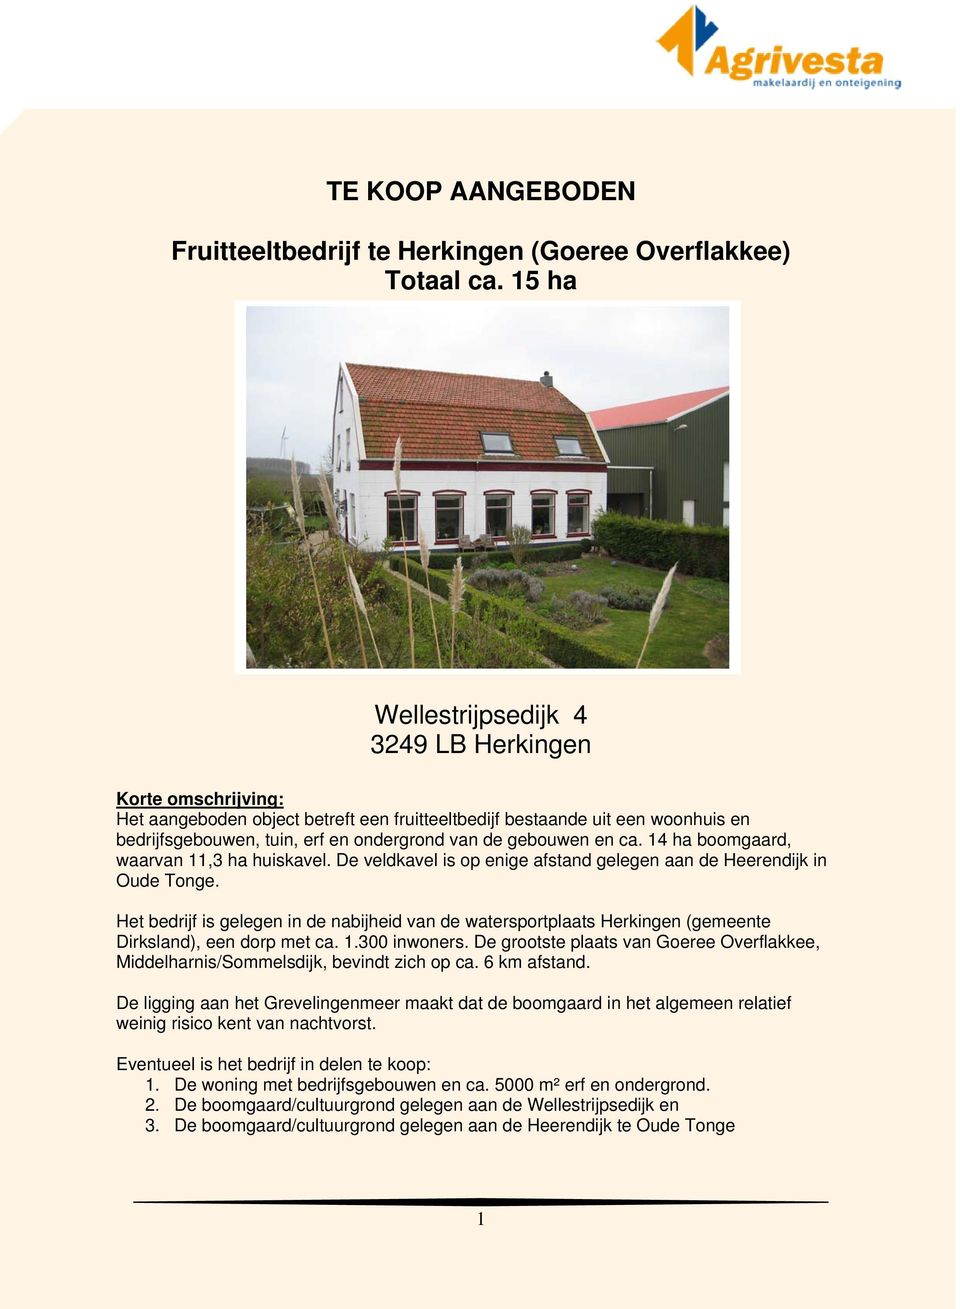 TE KOOP AANGEBODEN. Fruitteeltbedrijf te Herkingen Overflakkee) ca. 15 ha - PDF download